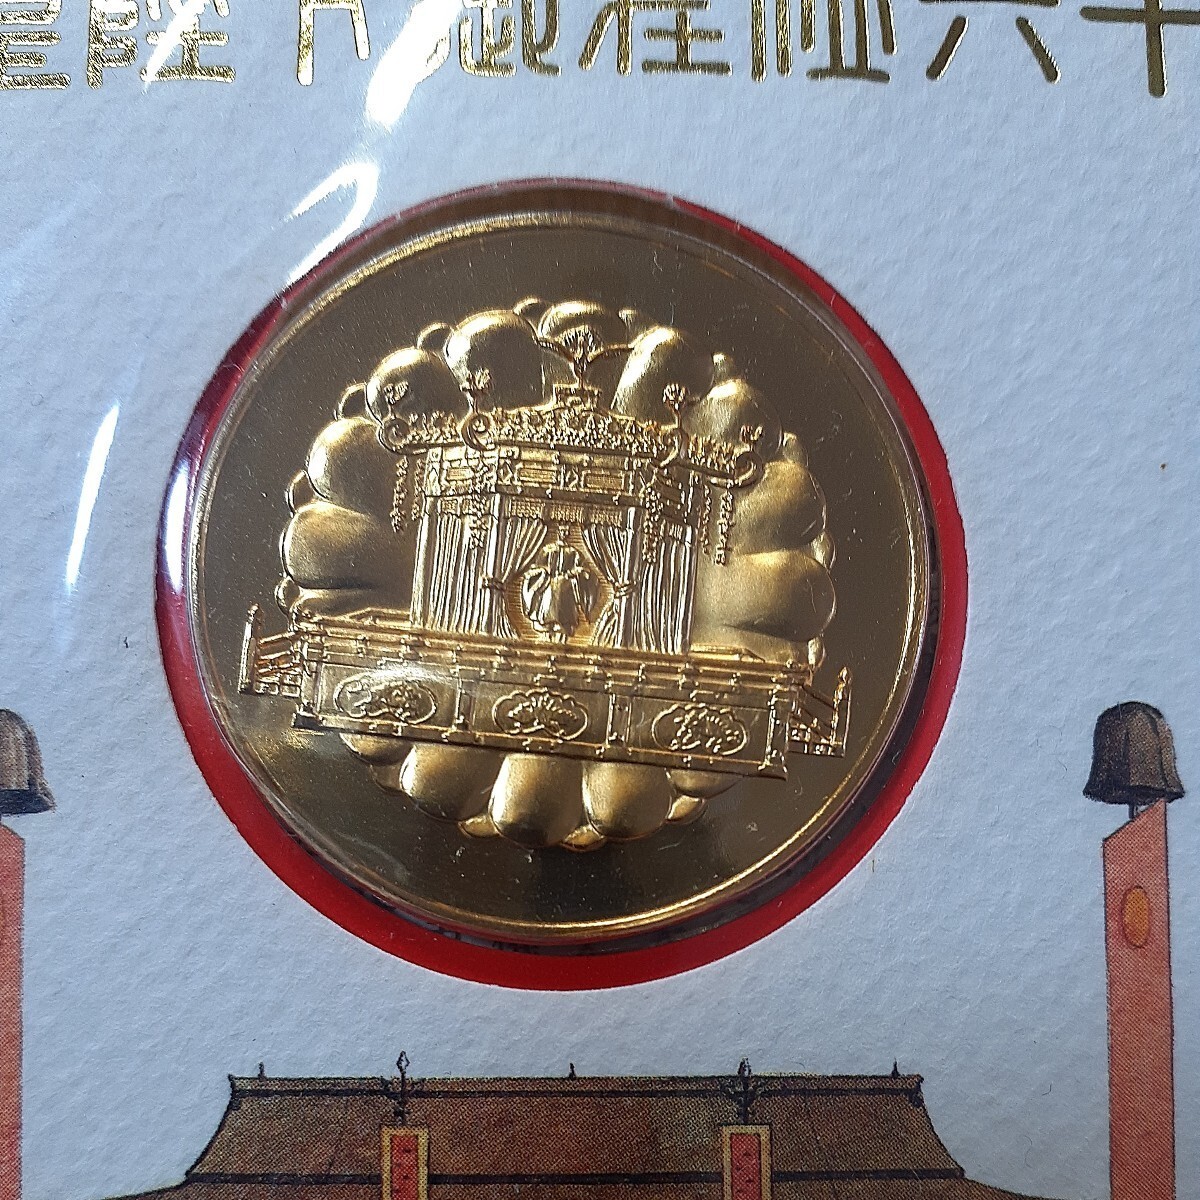 (昭和)天皇陛下御在位六十年記念メダル(純金仕上げブロンズ製)・切手セットの画像1